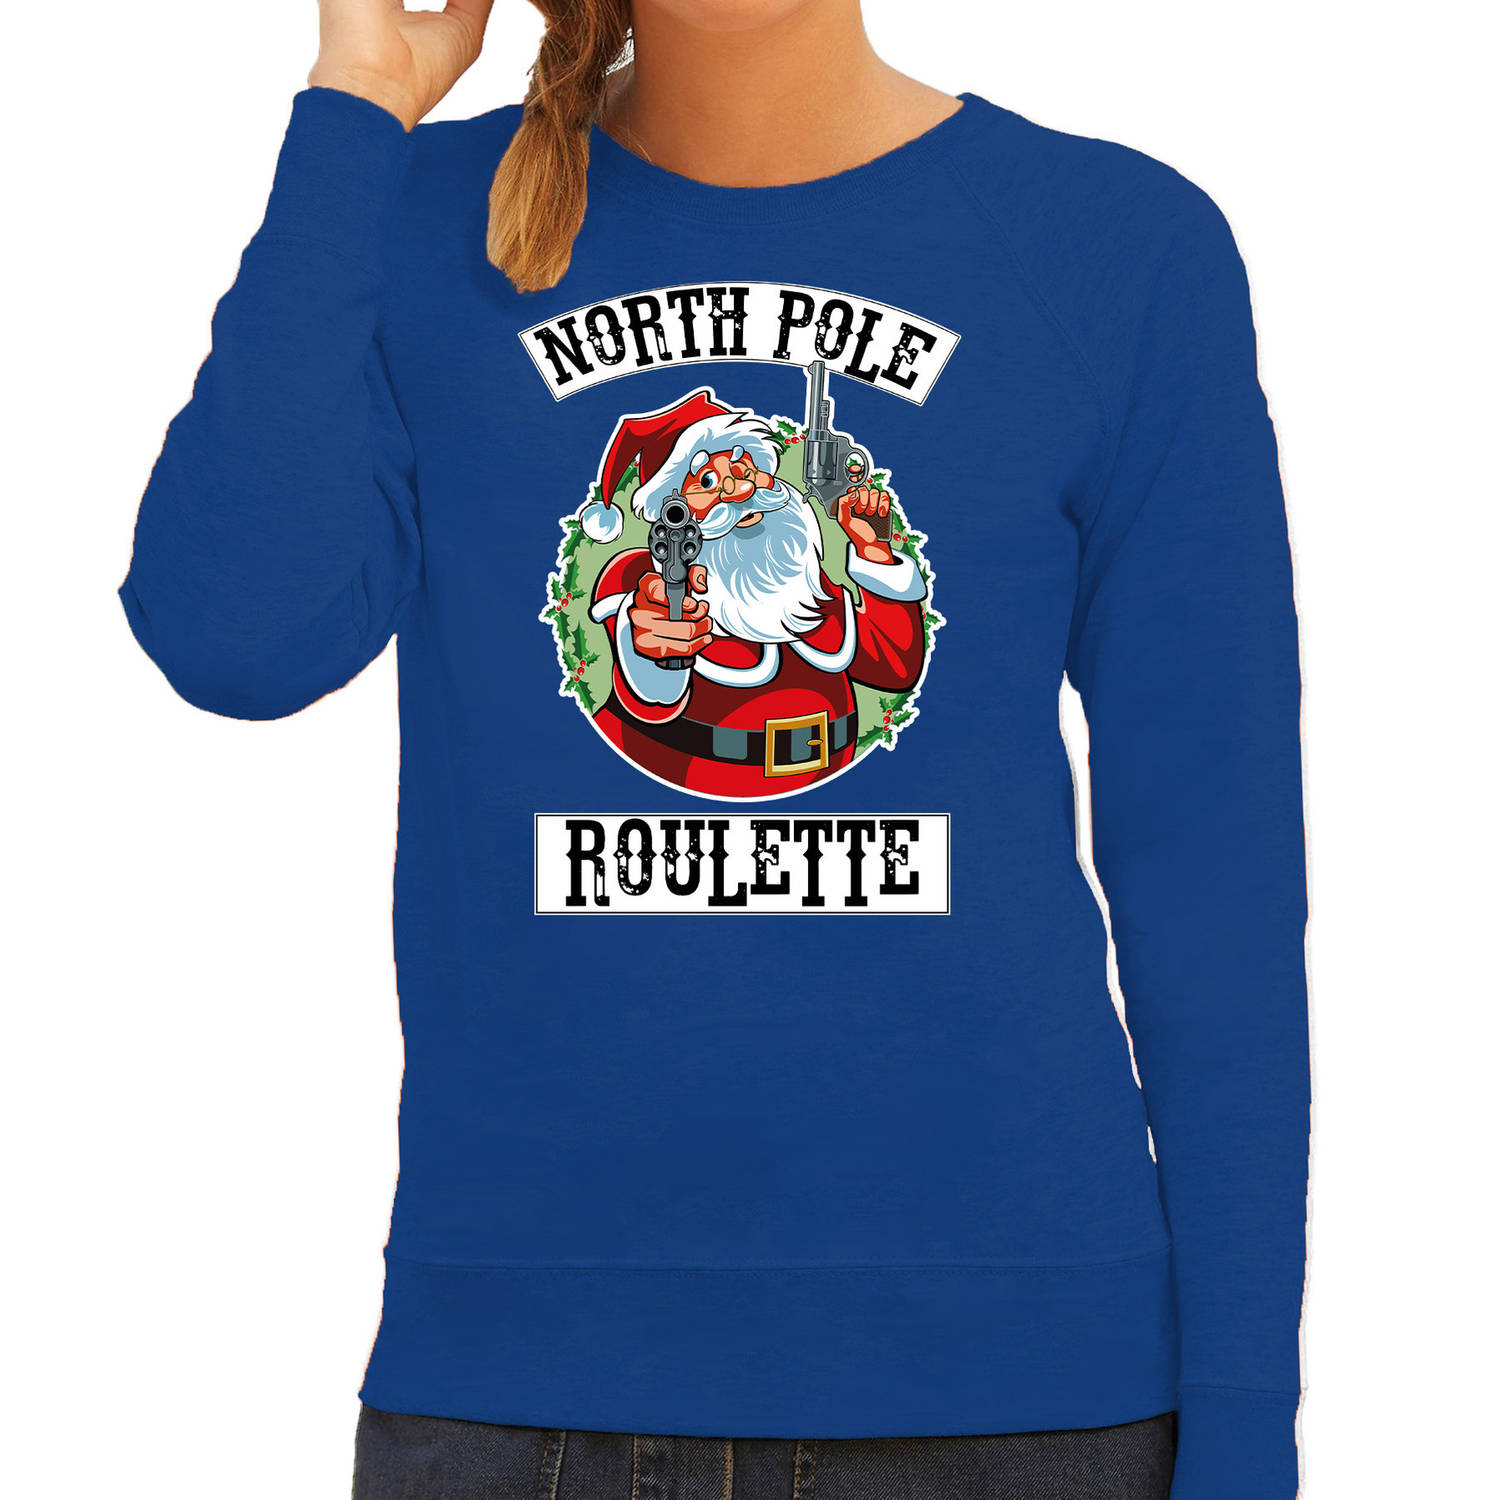 Blauwe Kersttrui / Kerstkleding Northpole roulette voor dames S - kerst truien